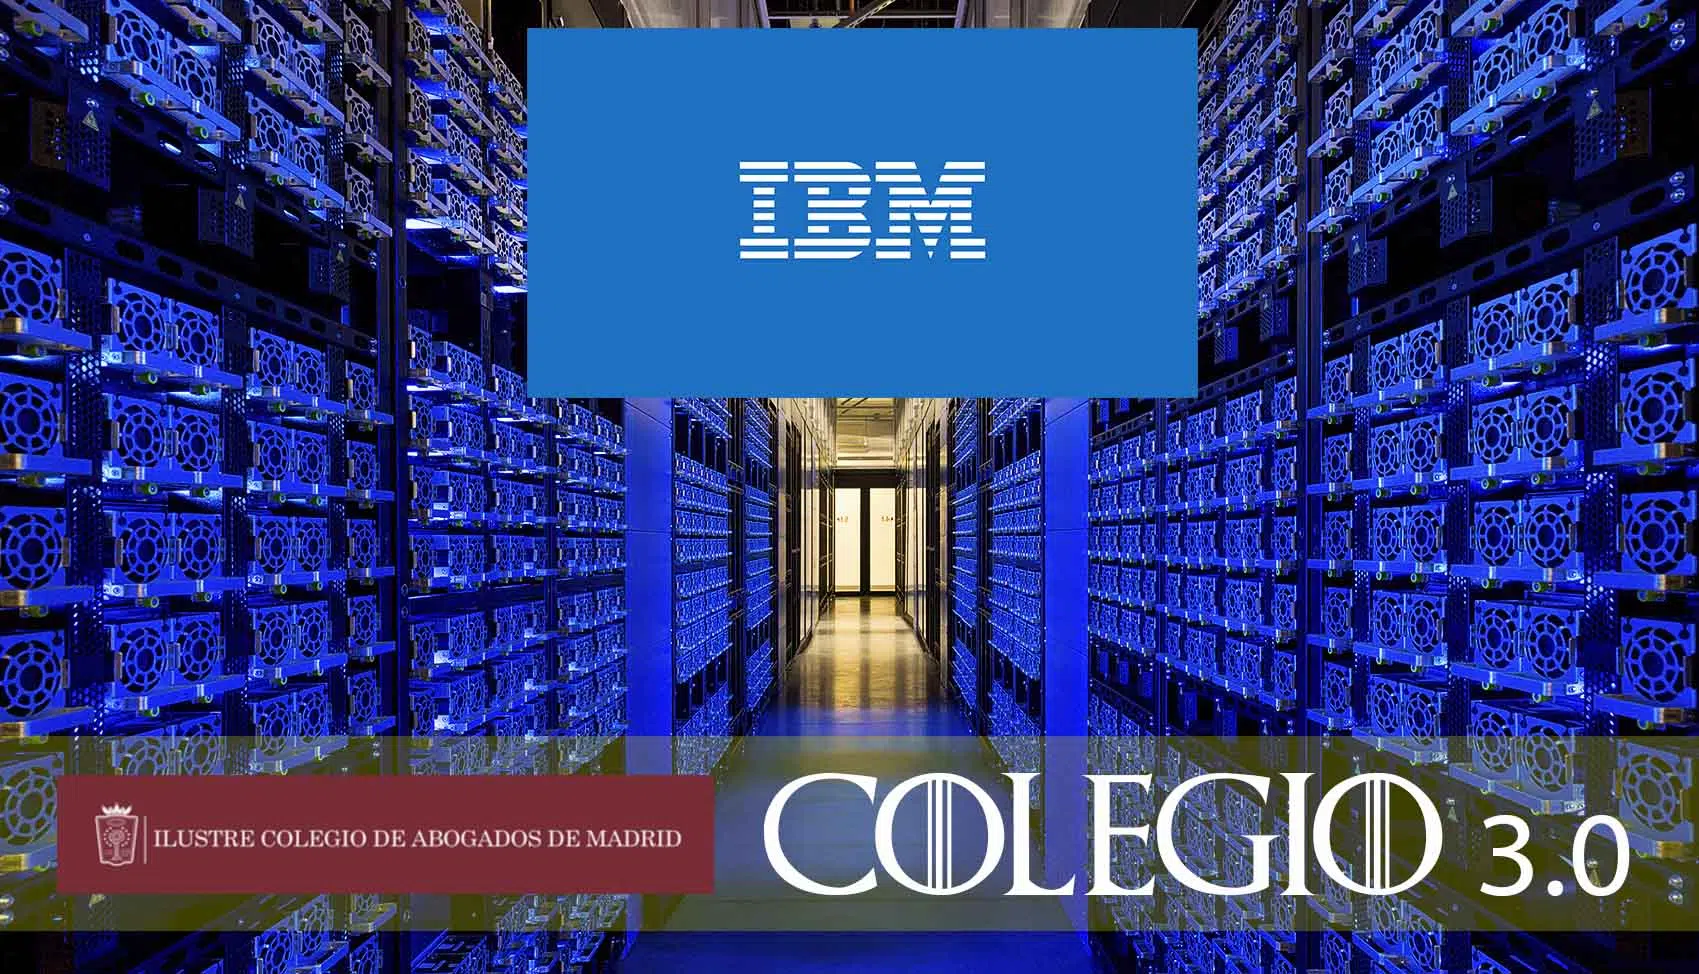 IBM condenada a pagar al ICAM más de 5 millones de euros por el fiasco de su proyecto tecnológico Colegio 3.0